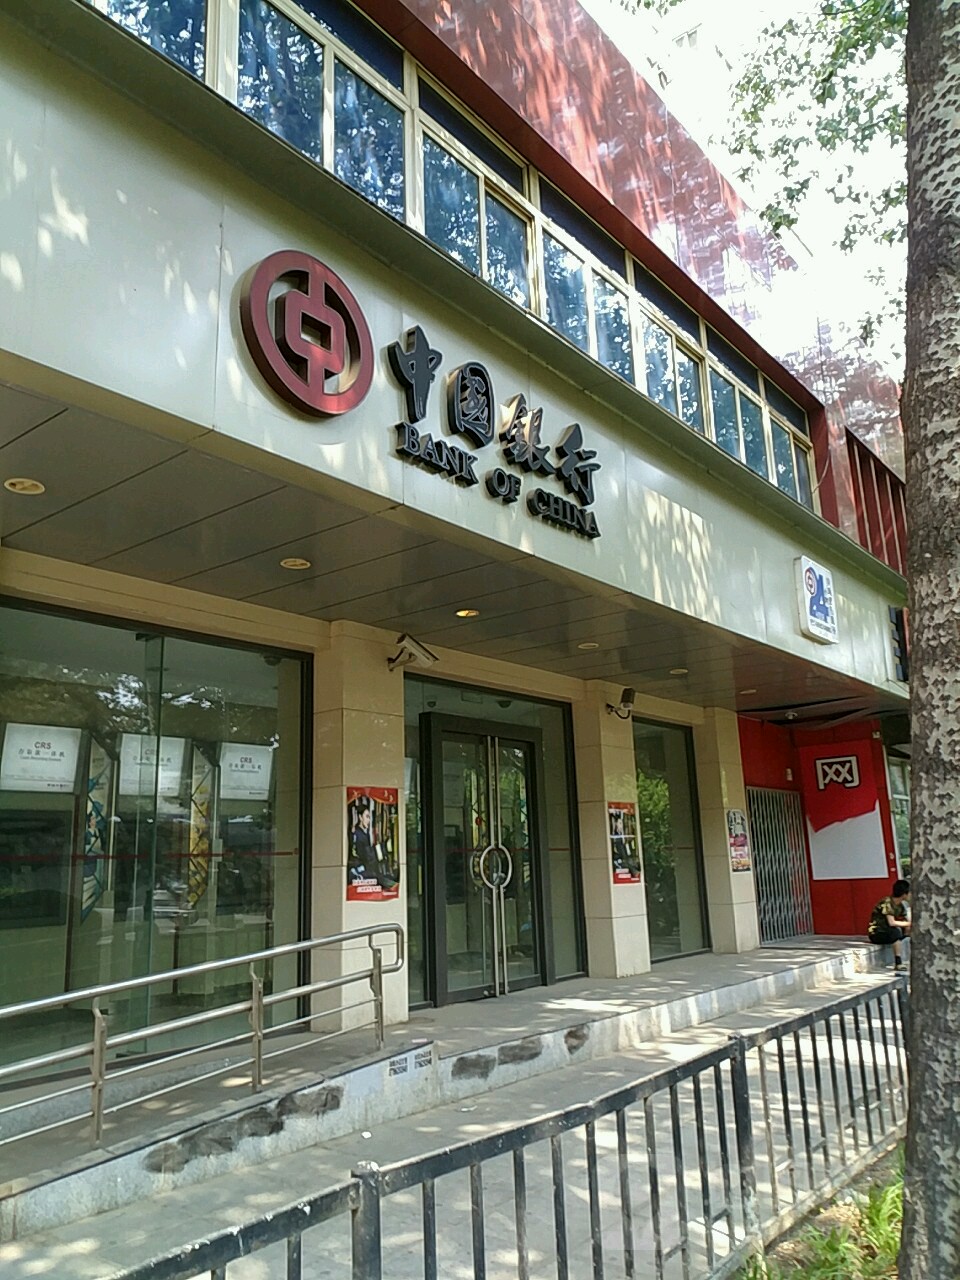 中国银行门口照片图片